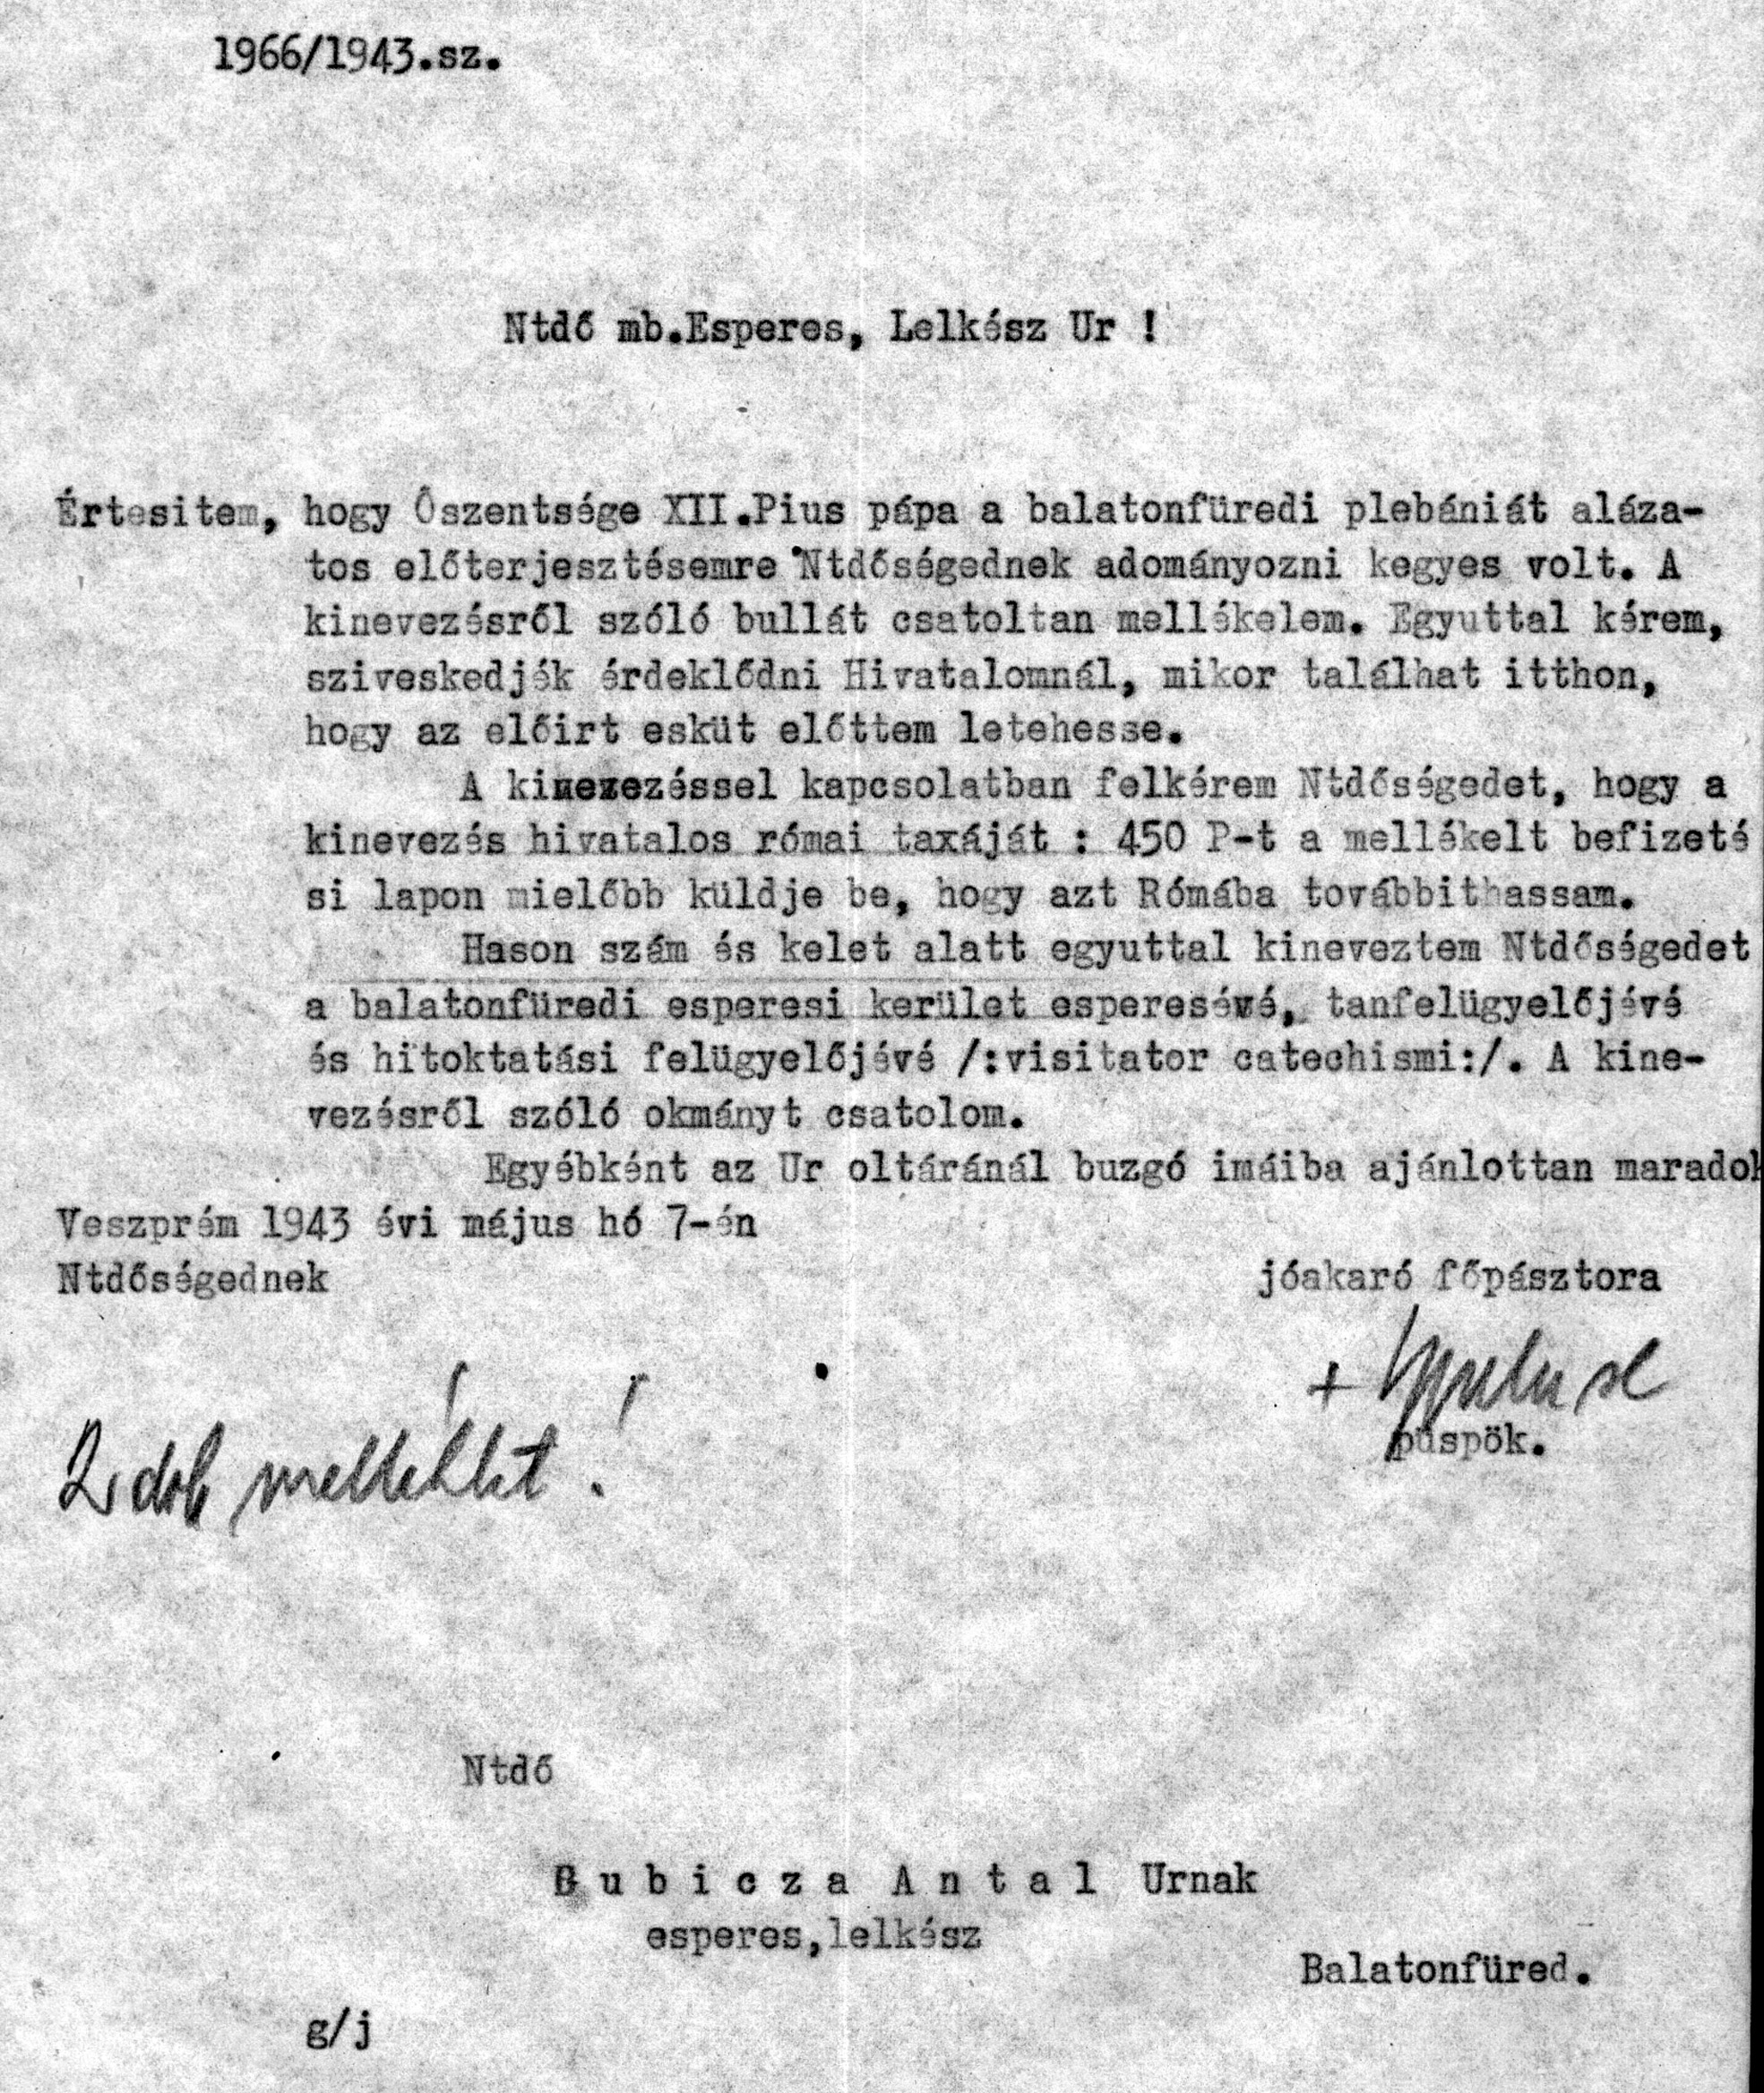 Gubicza Ilona A balatonfüredi plébániára történő kinevezése, 1943 hideg idő. A halottat előző nap ideszállították. A templomban ravataloztuk fel a mellékoltár mellett, illetve előtt. ¾ 2-kor du.